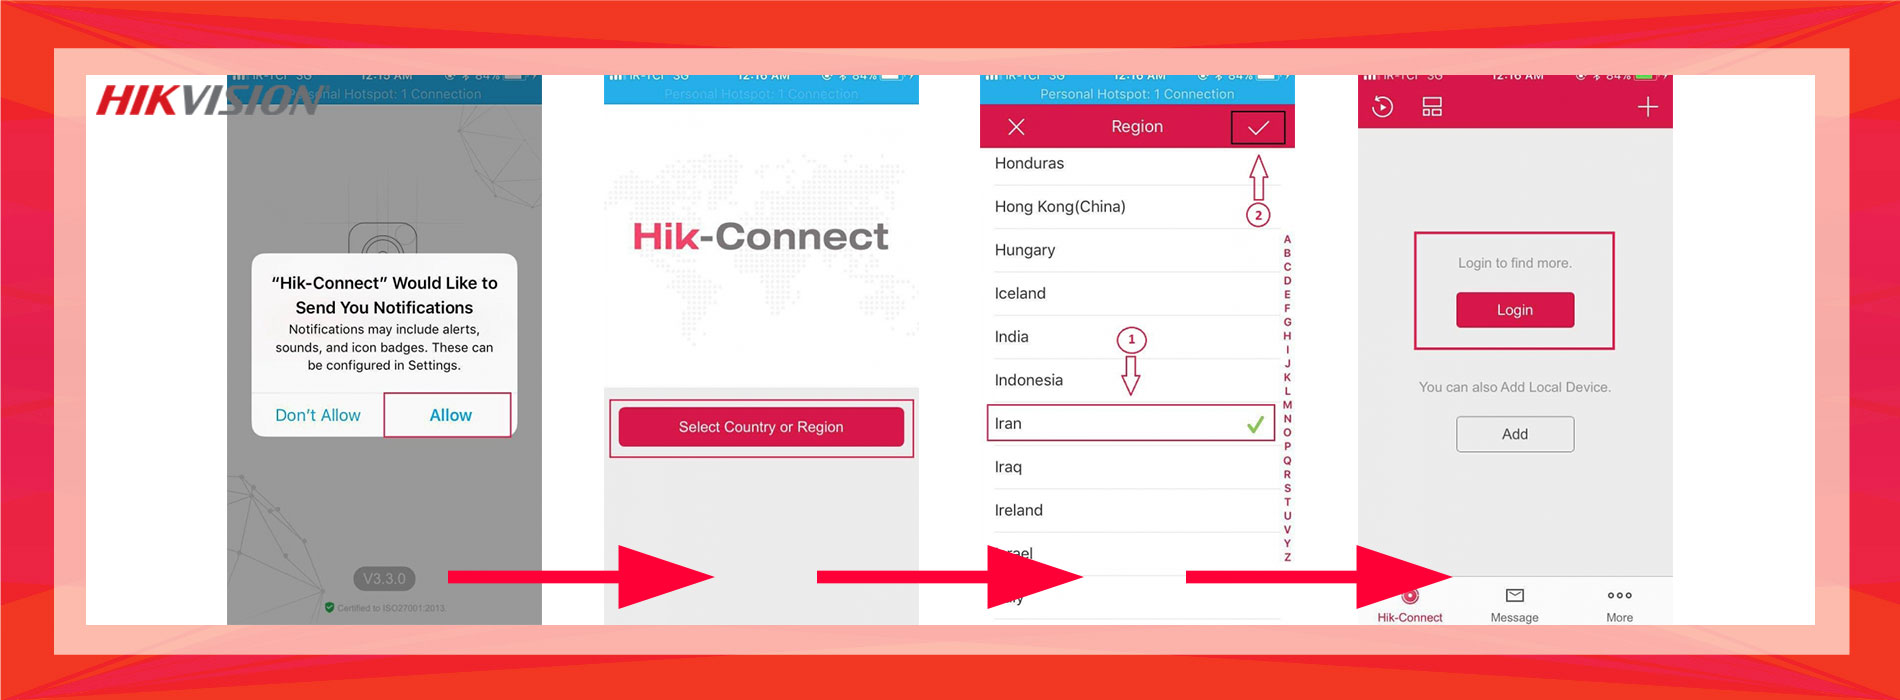 hikvision hik-connect